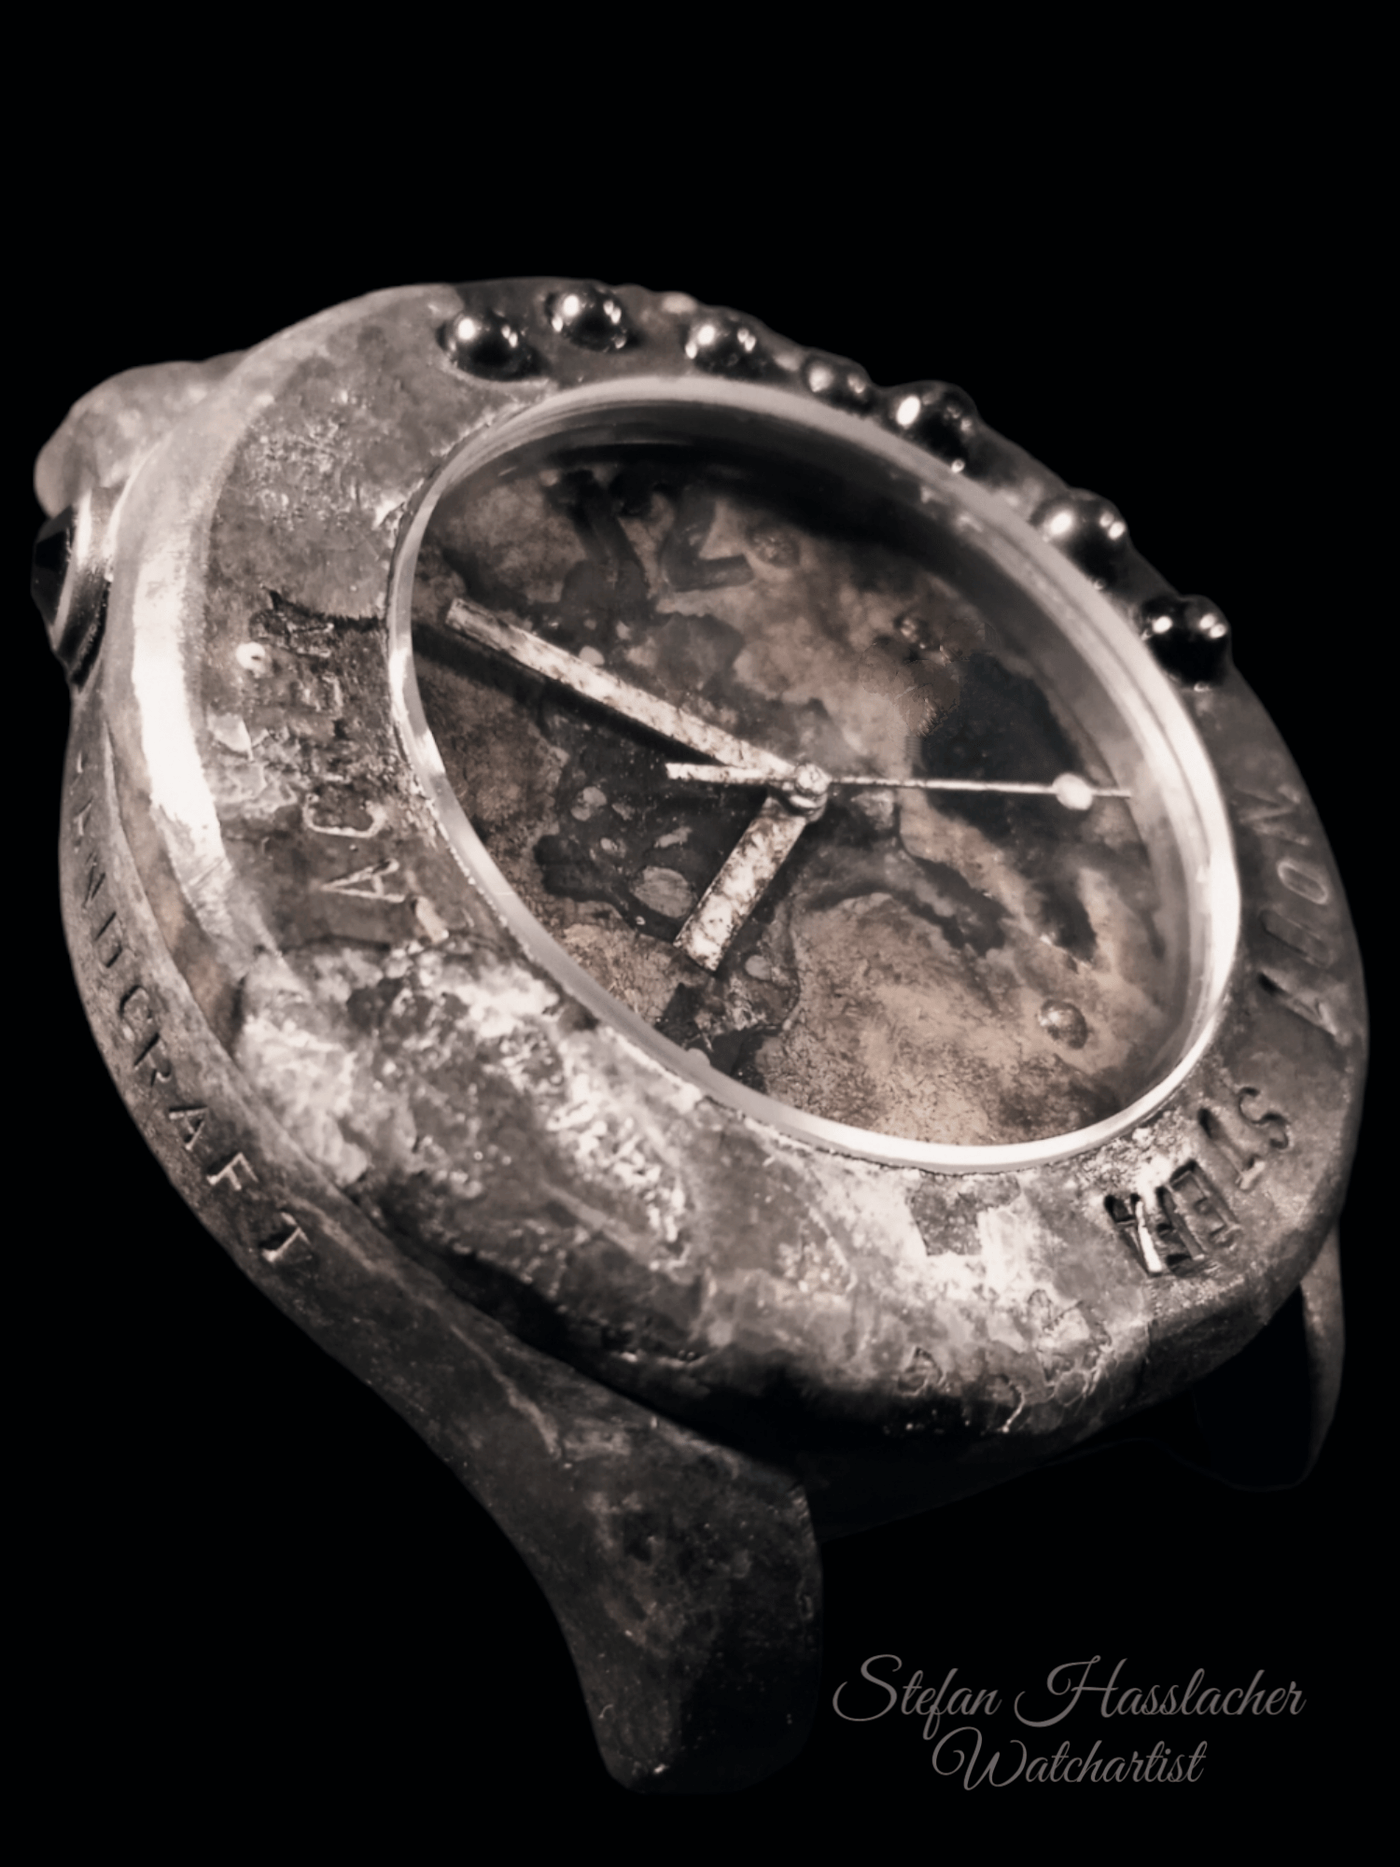 Centum - Handgefertigte Uhr - Einzelstück